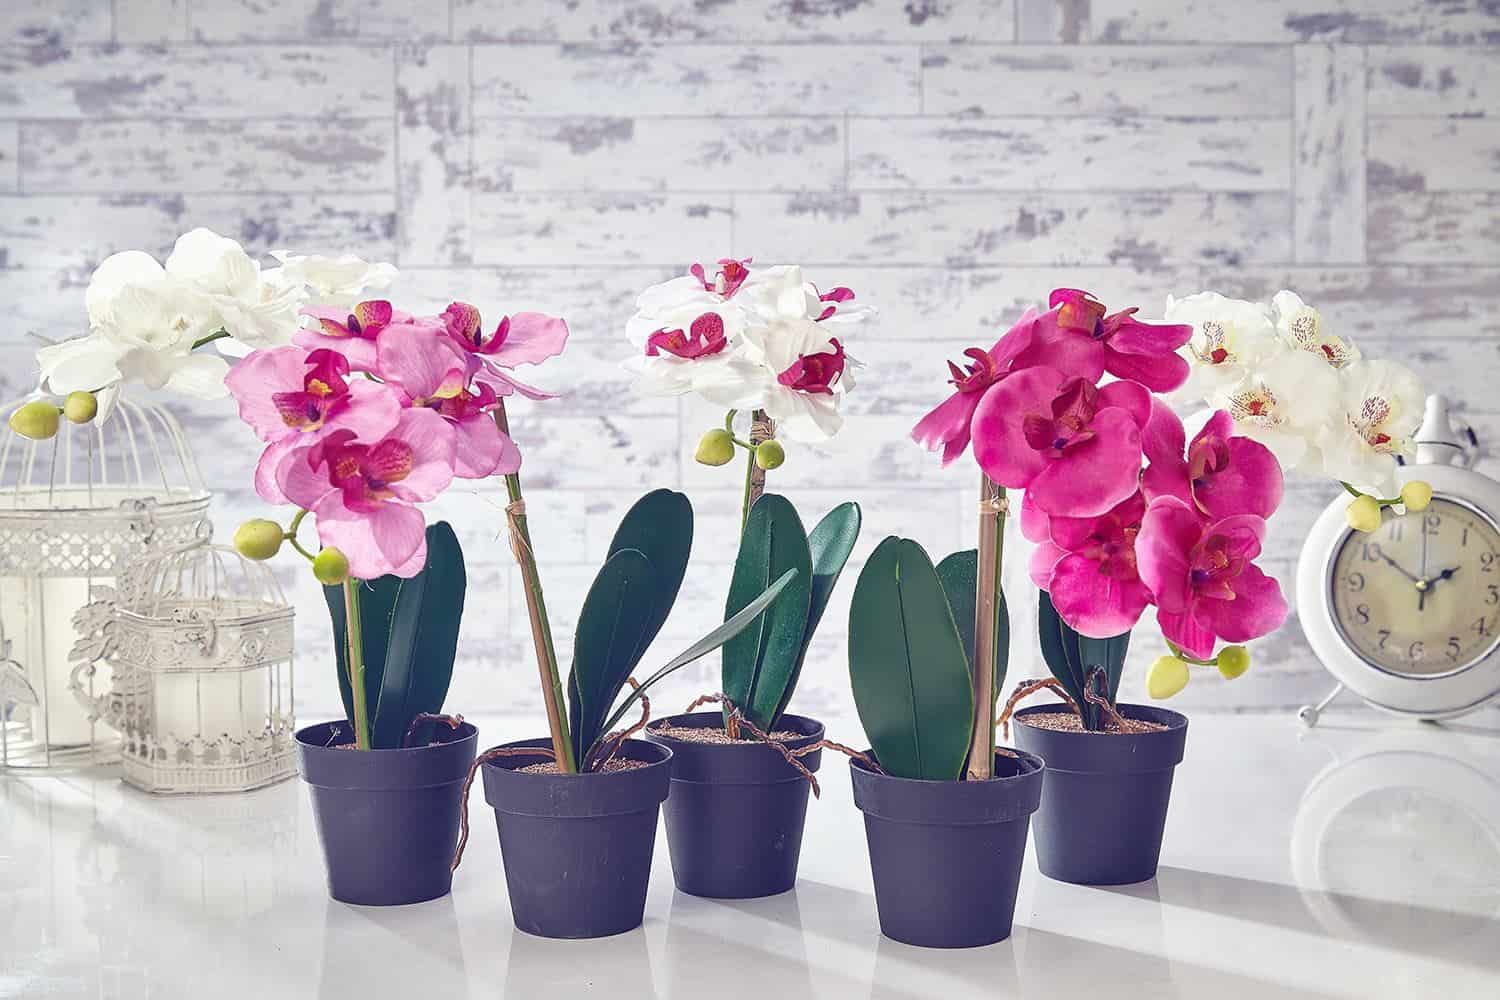 Как ухаживать за орхидеей – инструкция по уходу и правильной пересадки растения в домашних условиях